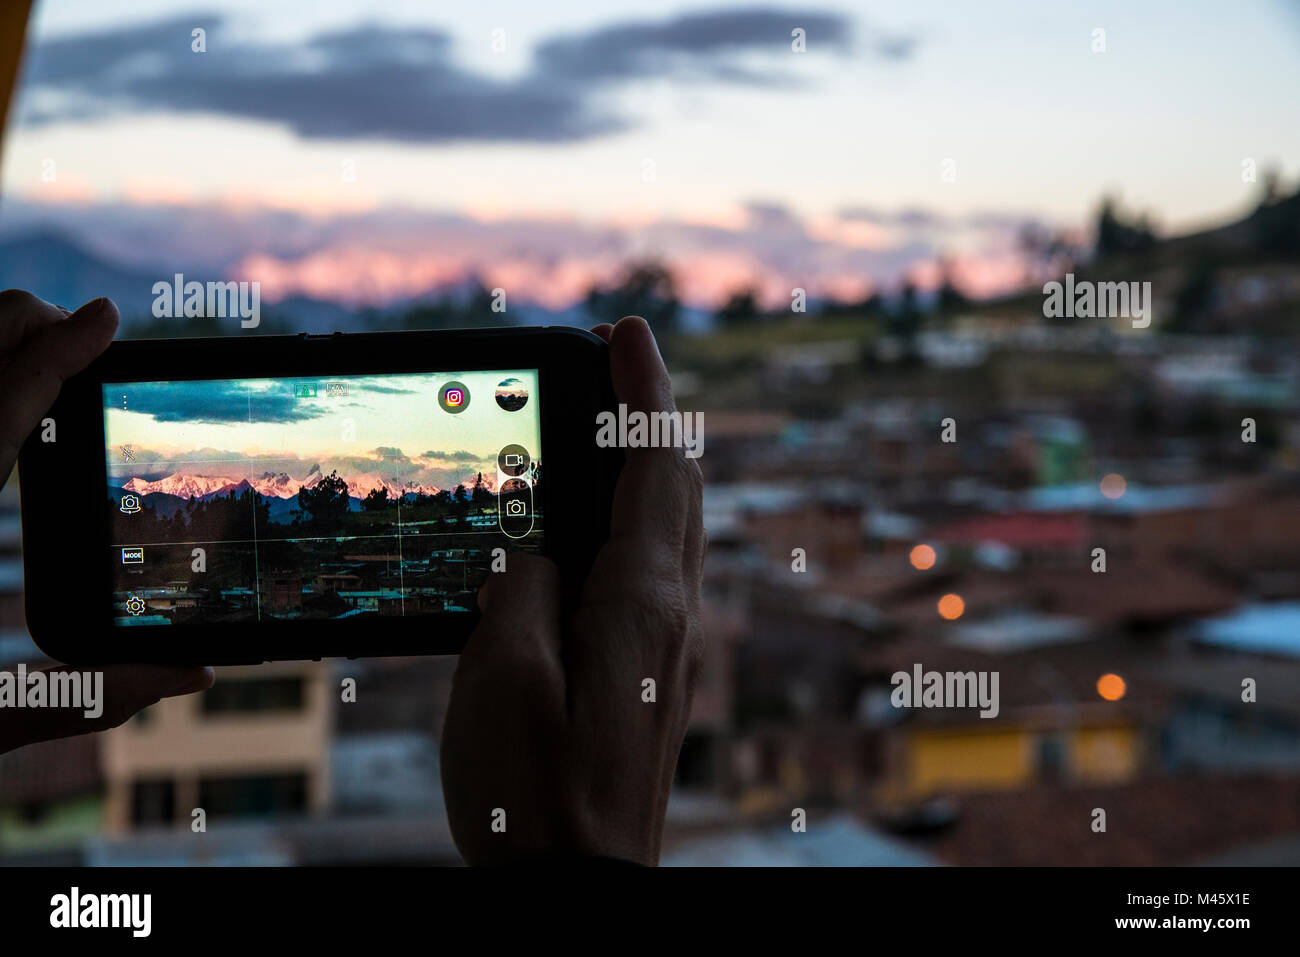 Vista di una persona che ha preso una foto con il loro cellulare della Cordillera Huaywash da un alto edificio in Chiquian, Perù. Foto Stock